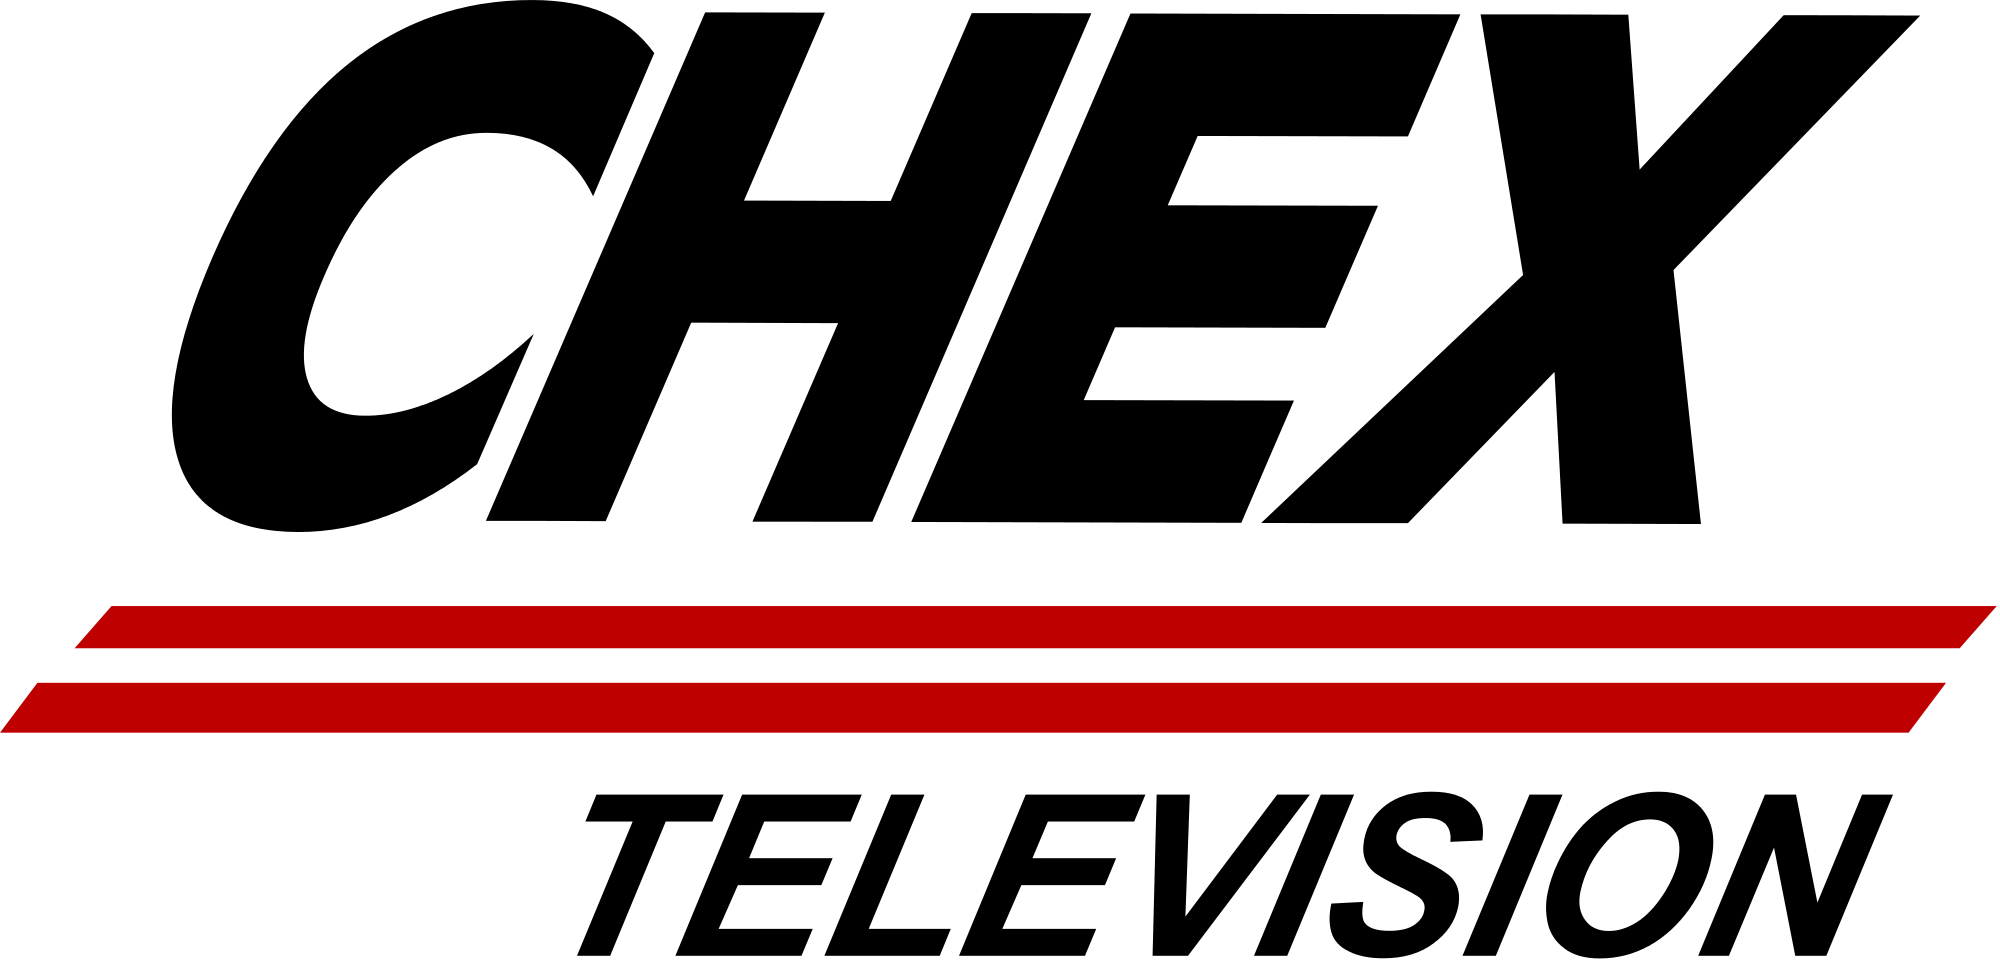 Chex Logo - CHEX TV Logo.svg